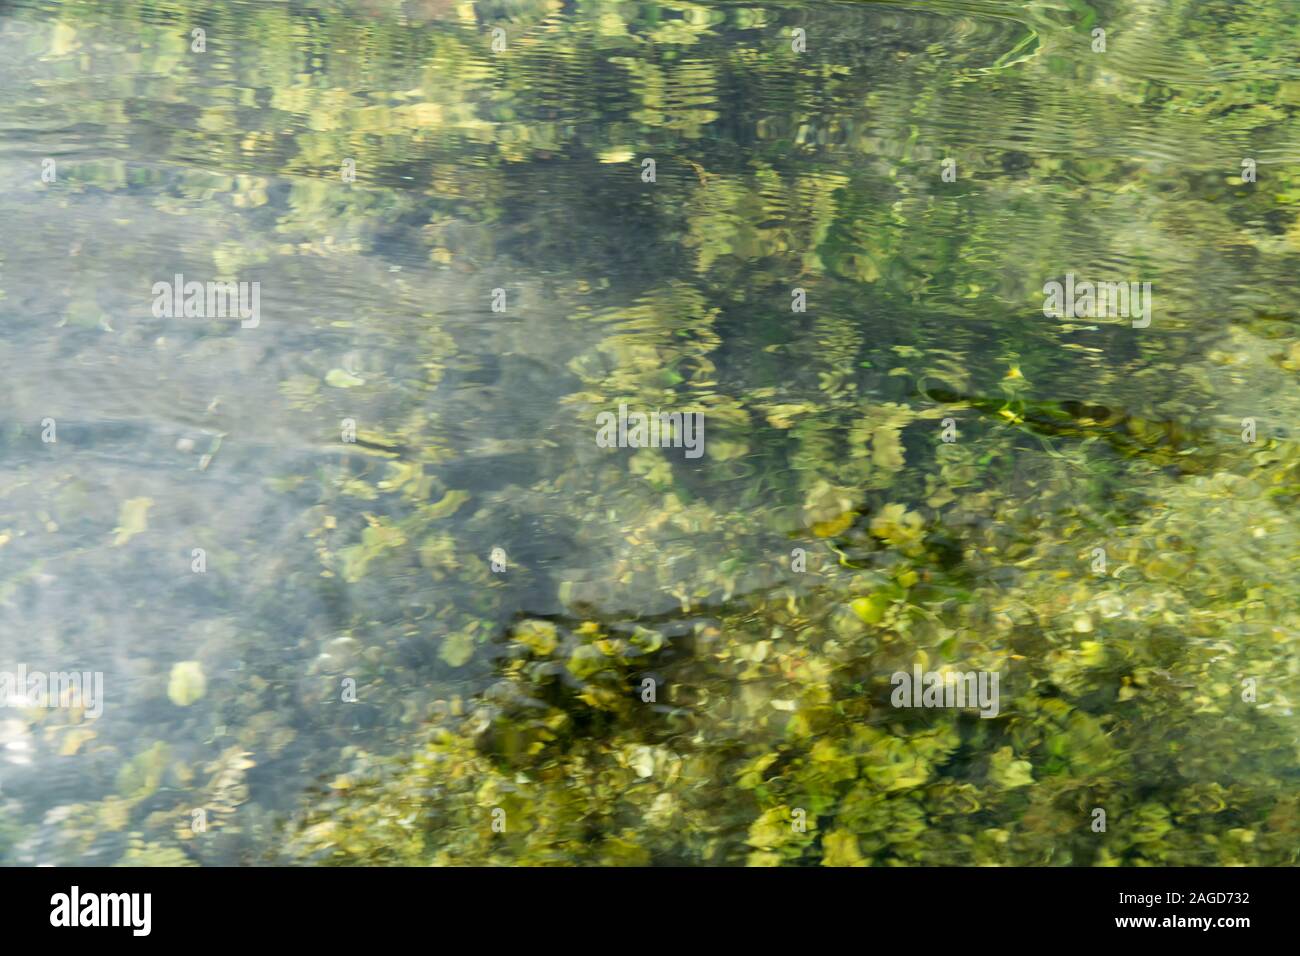 Résumé fond vert texture de l'eau. Rippled water surface naturel vert et jaune avec des plantes de l'eau sous la surface. Motion blure. Banque D'Images